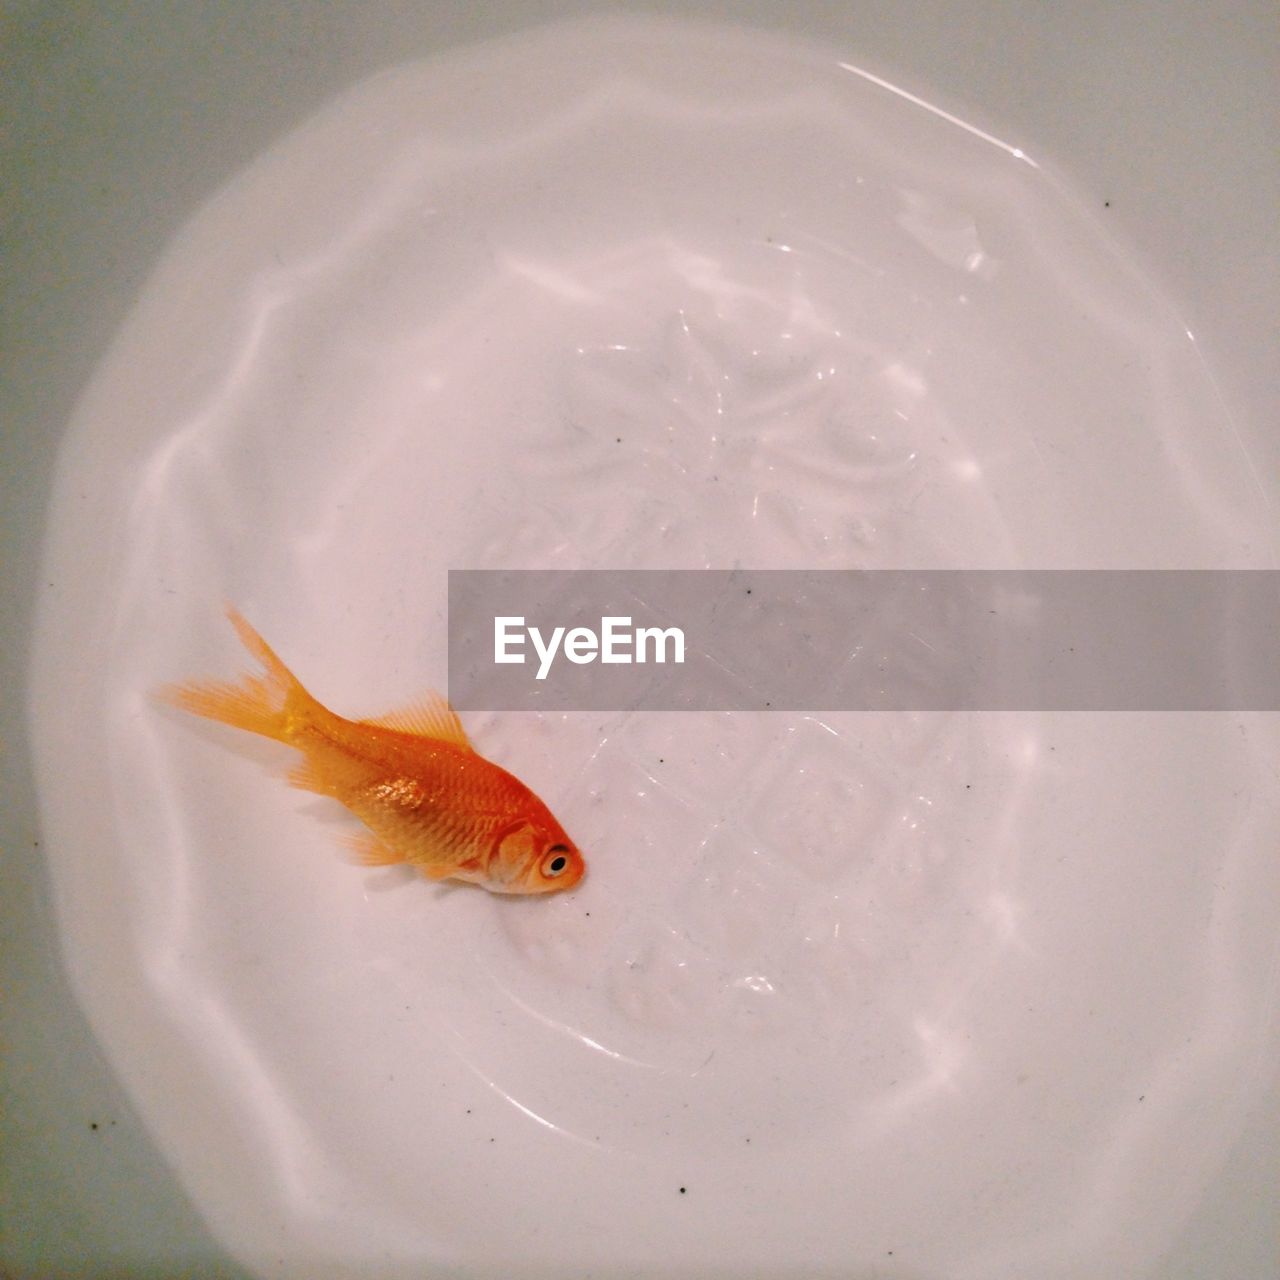 Dead goldfish on white plate